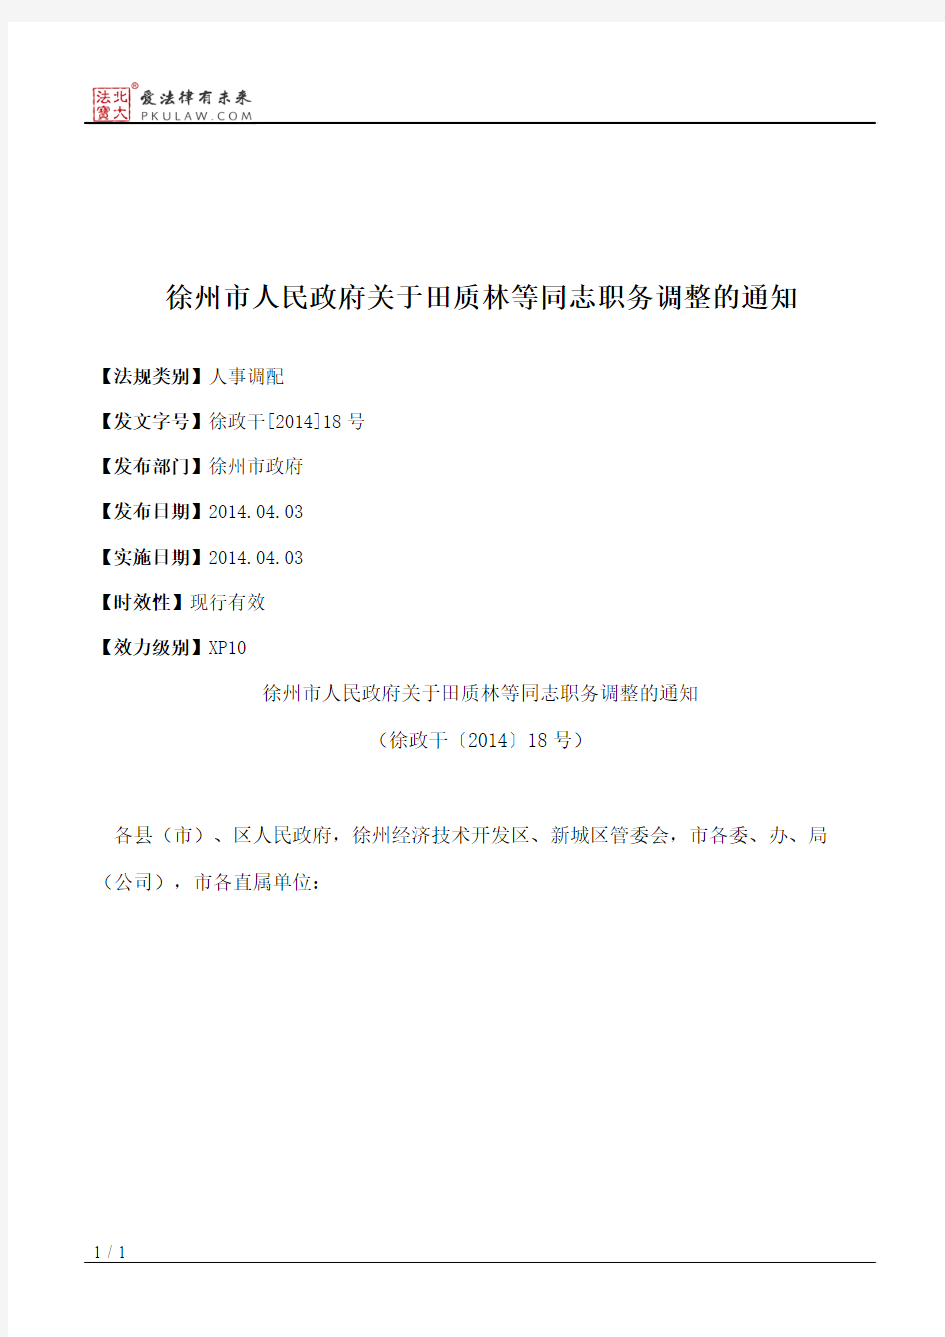 徐州市人民政府关于田质林等同志职务调整的通知